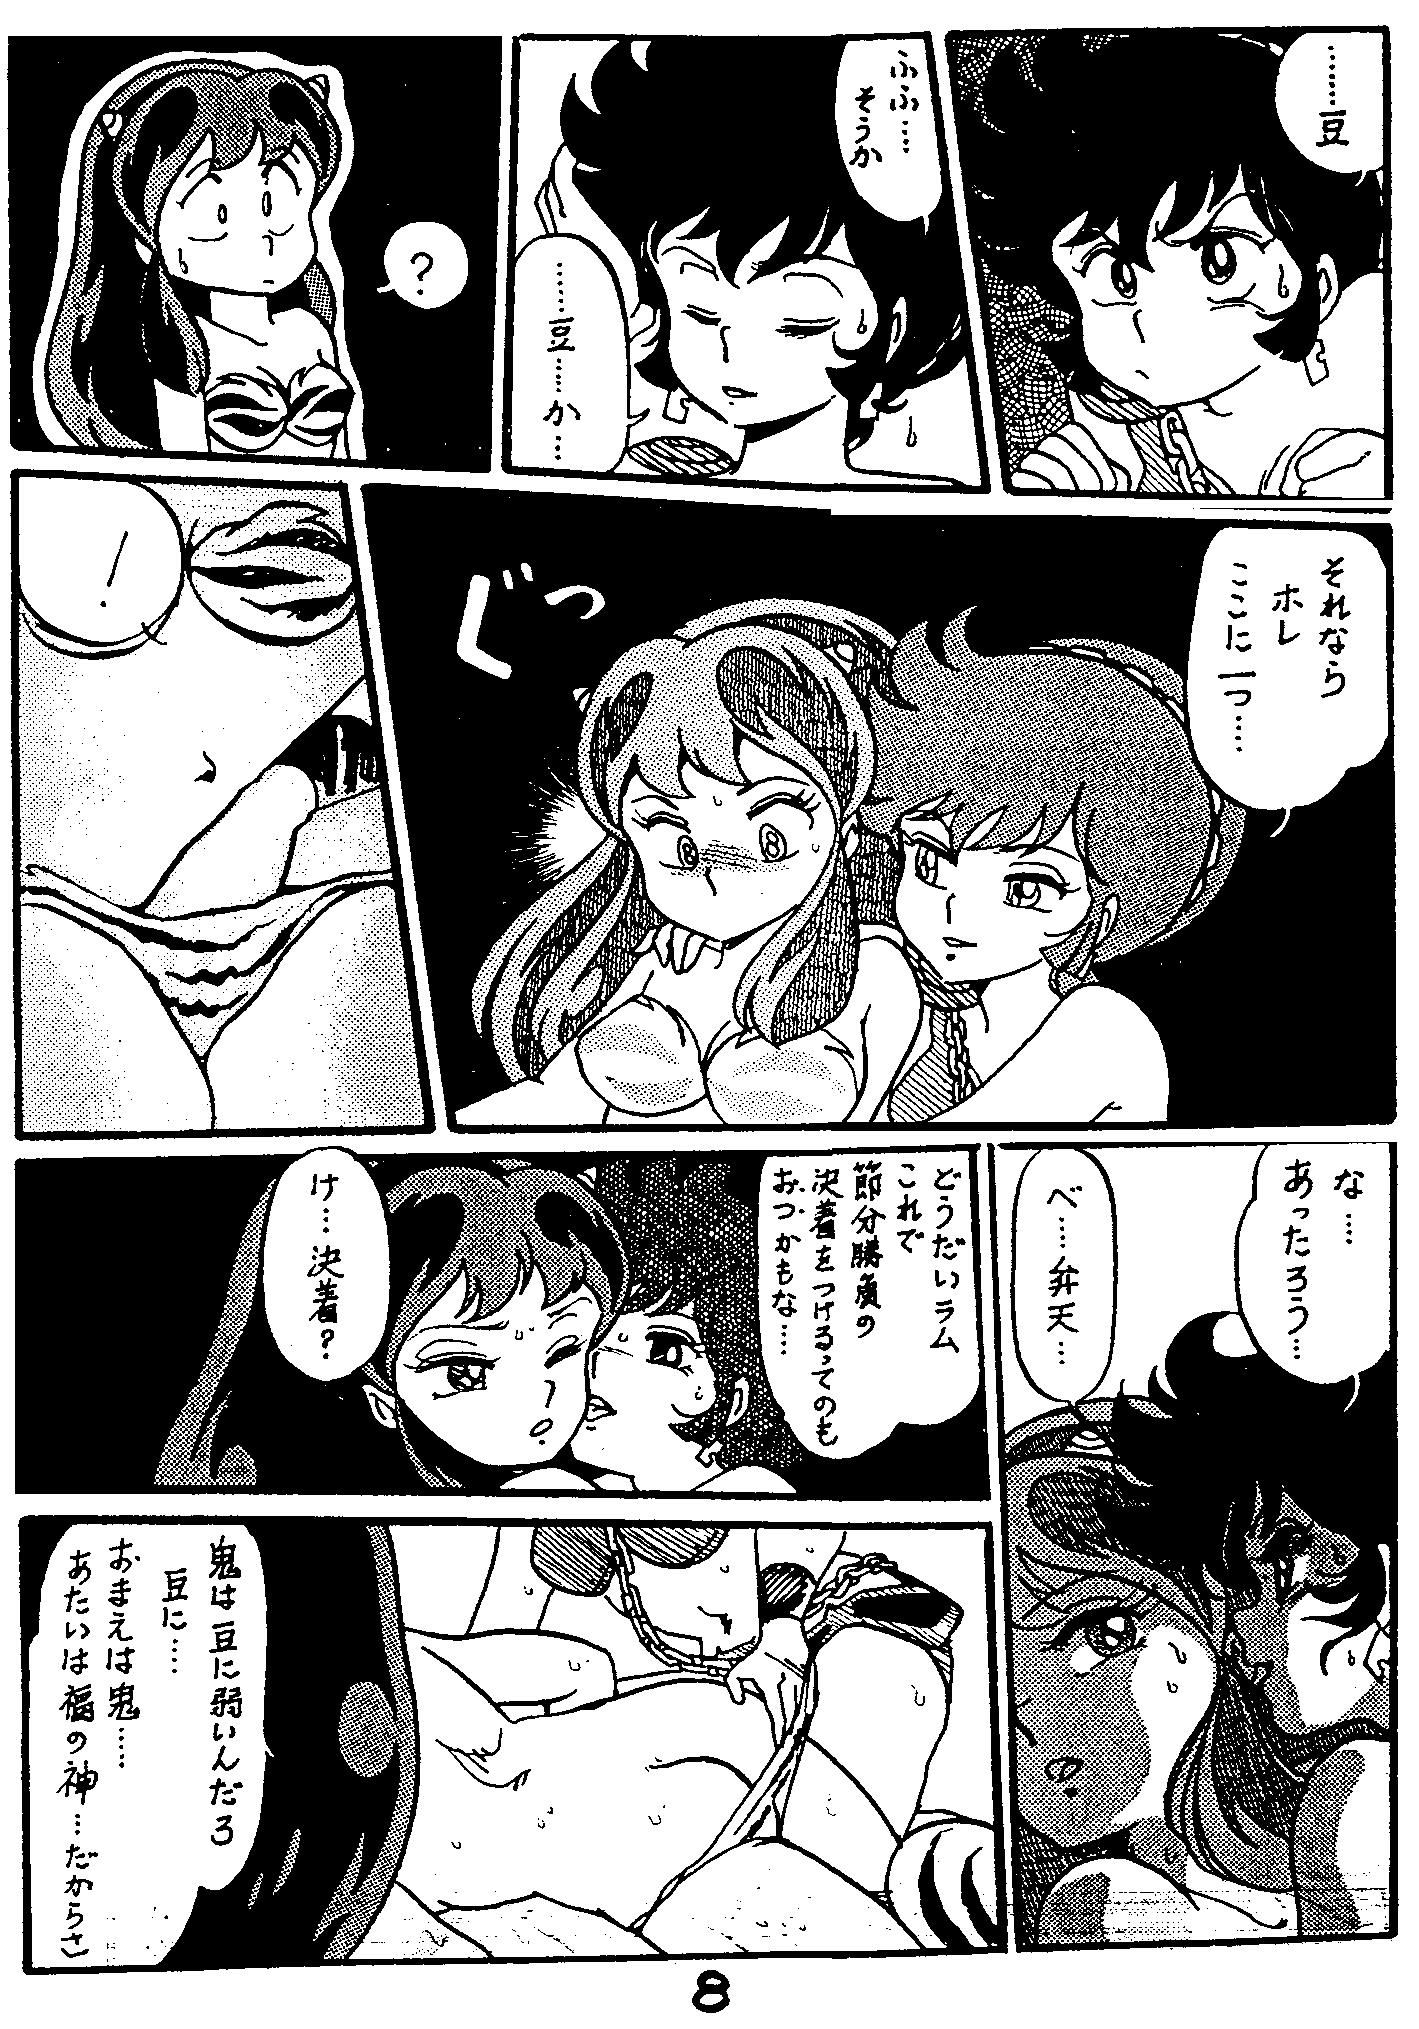 Zorra Otome ni Ashita wa Nai - Urusei yatsura Hot Women Having Sex - Page 2